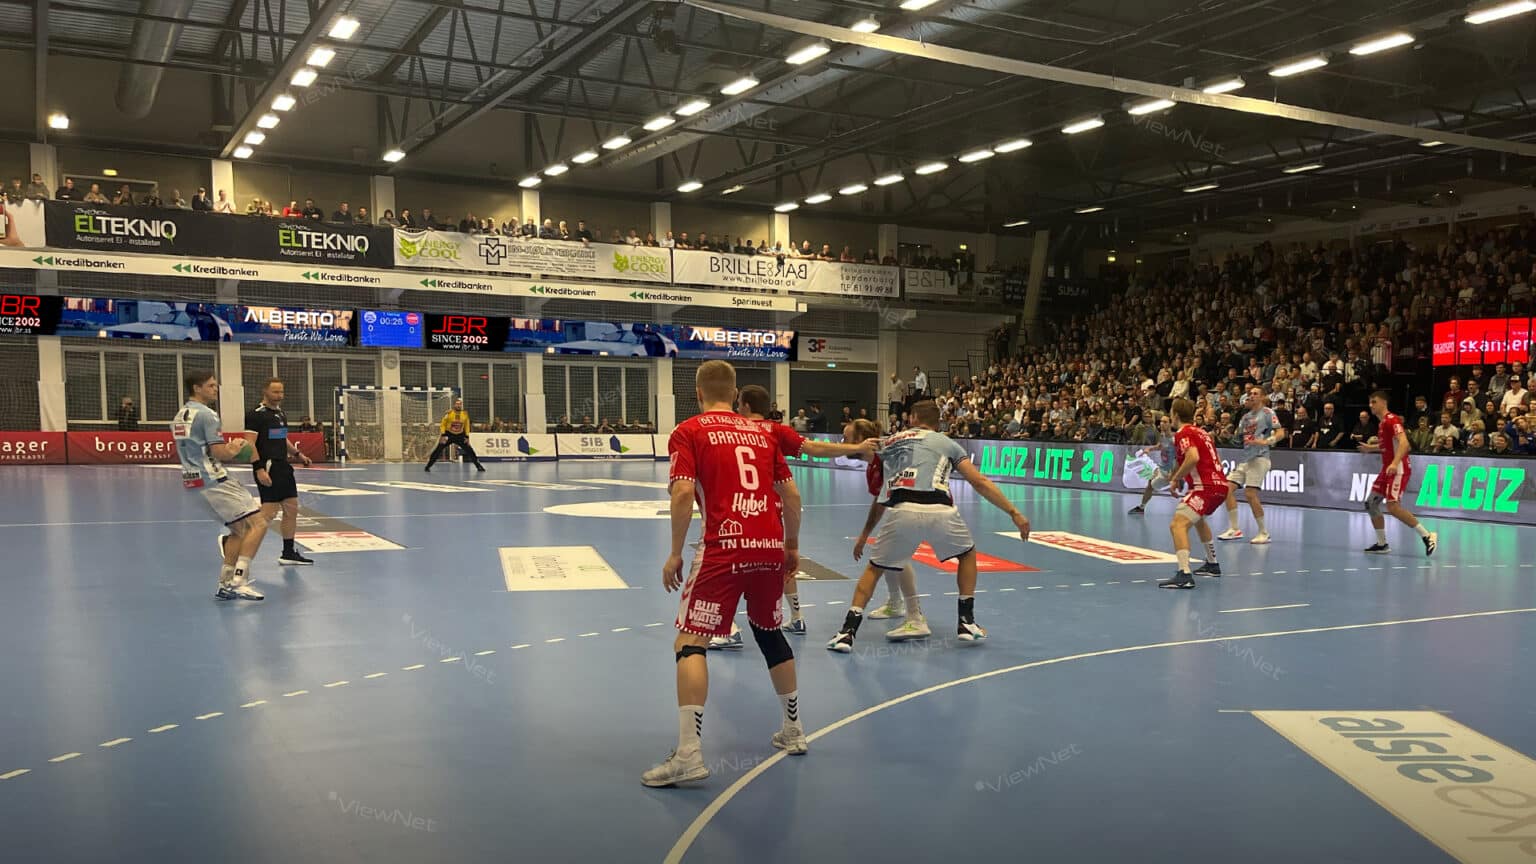 Handballspiel der Männer von Sønderjyske in Skansen